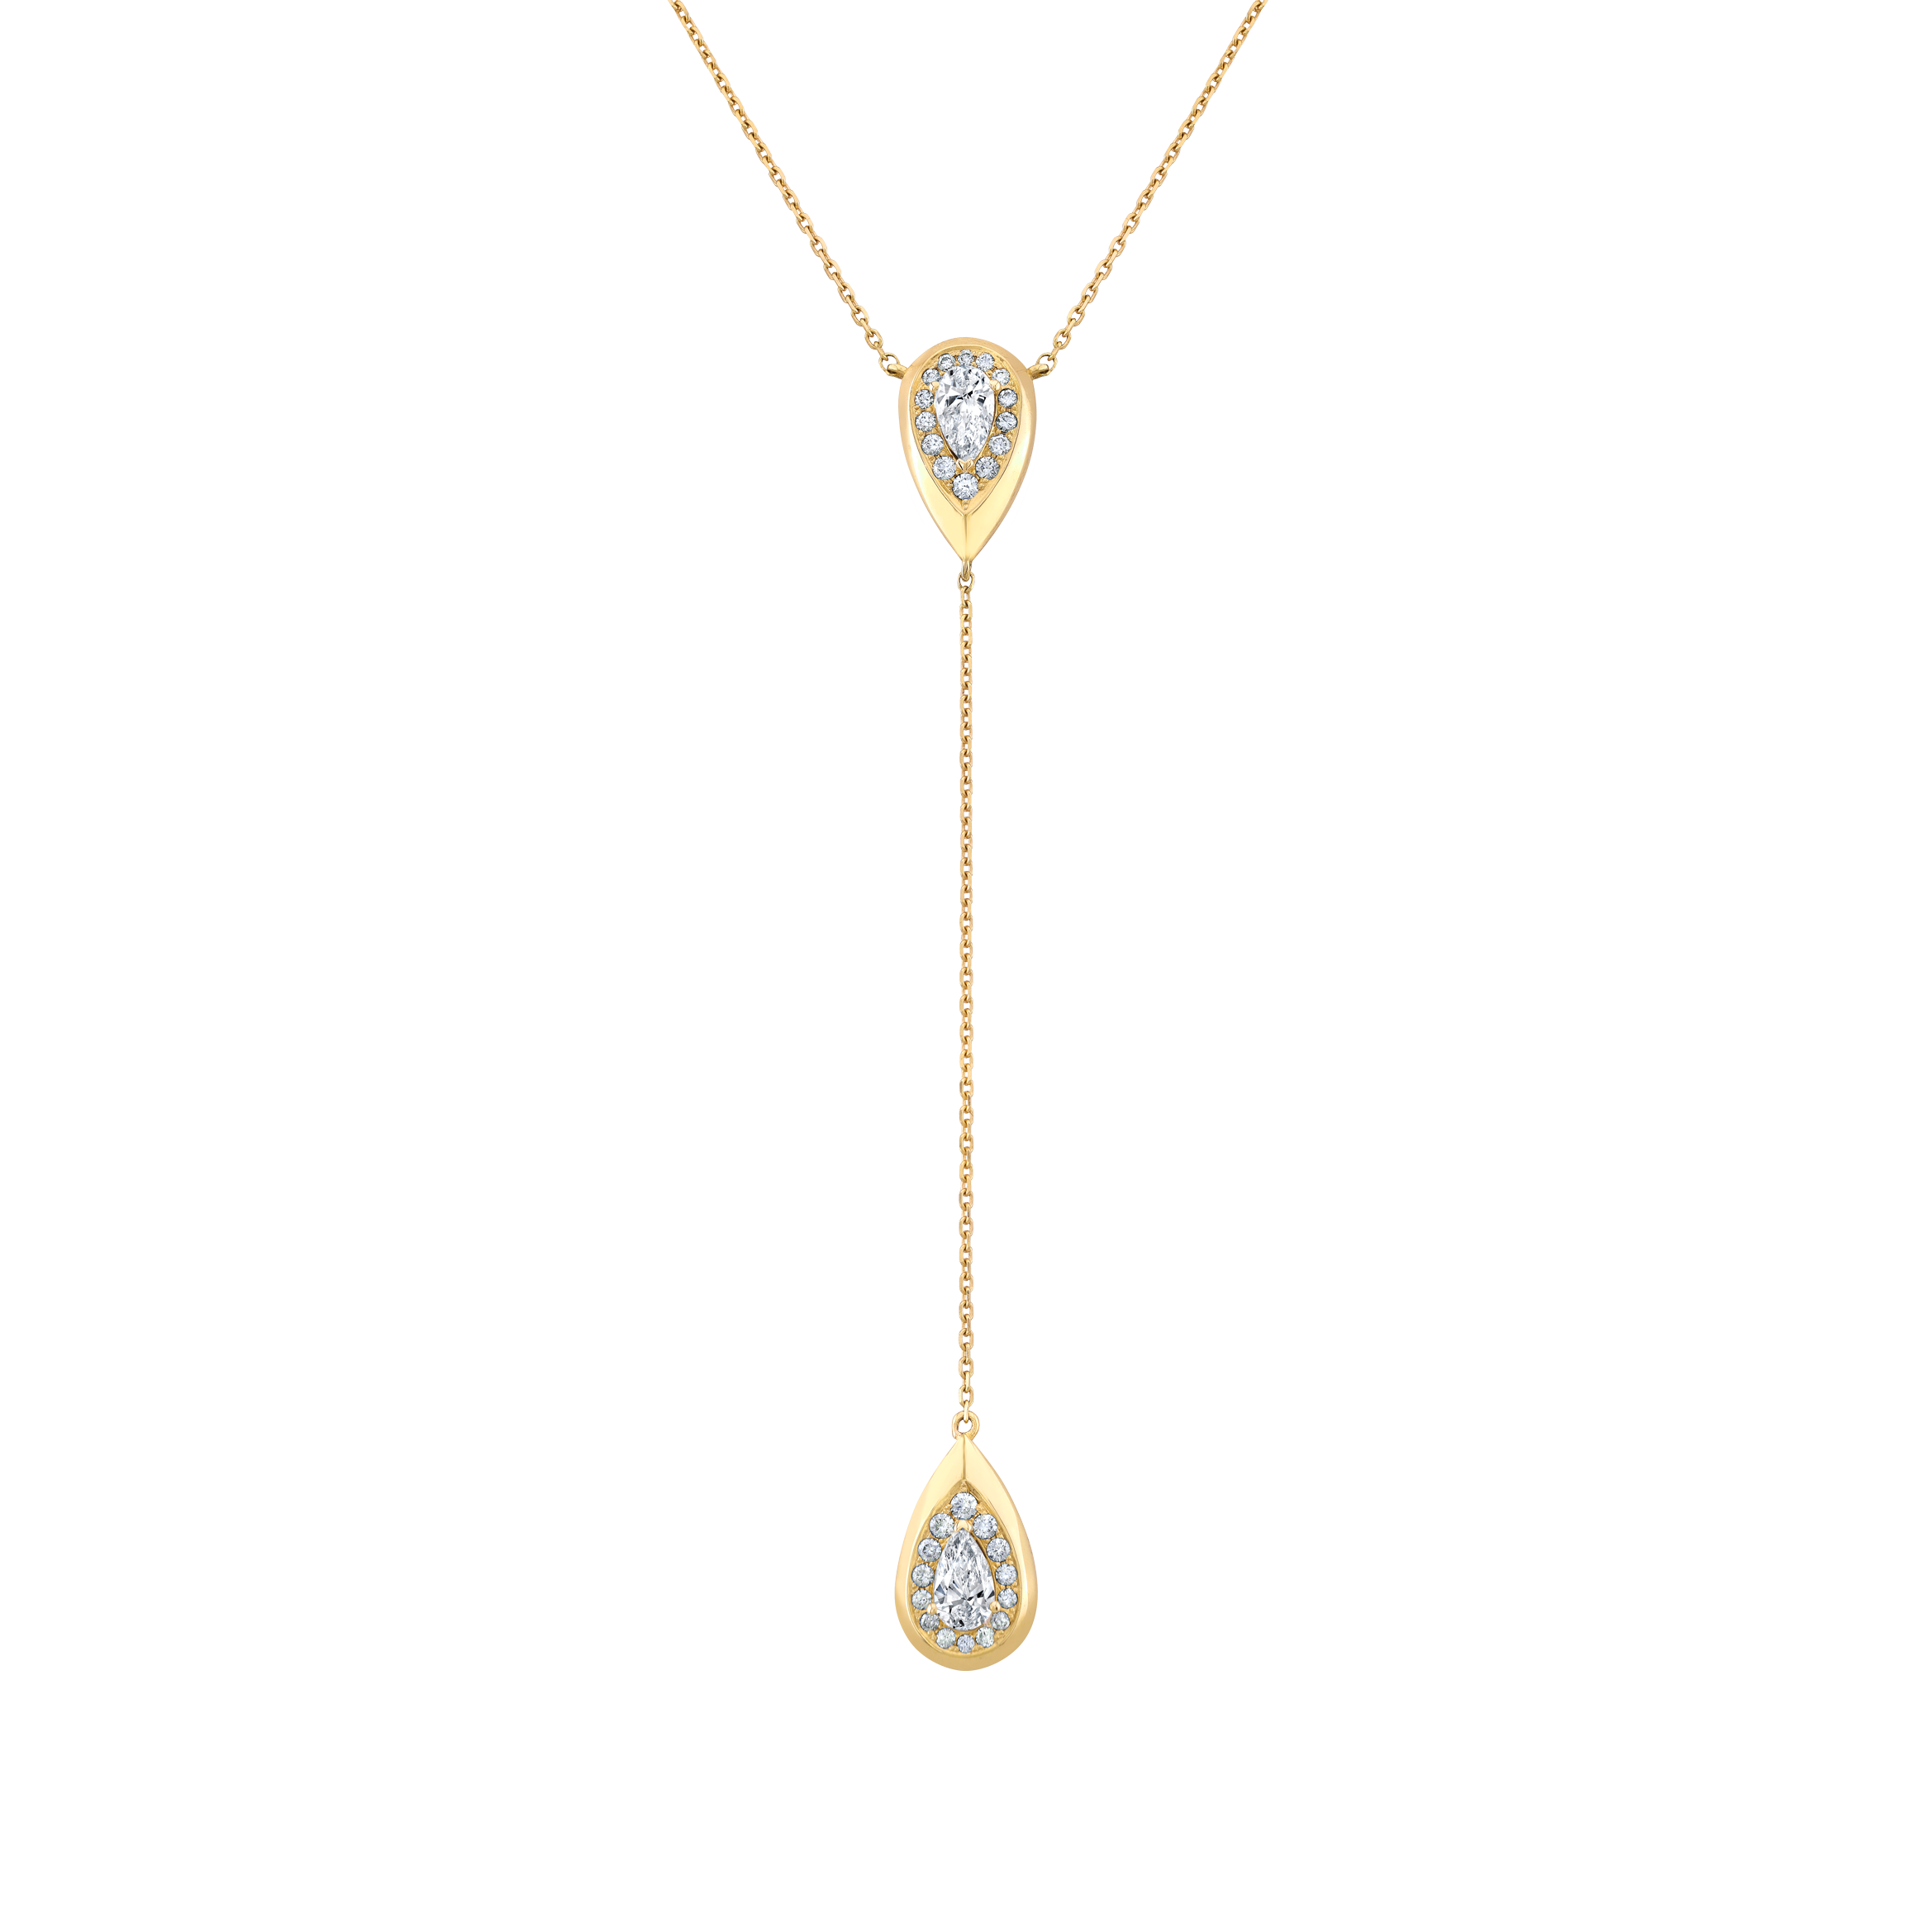 Aqua Droplet Lariat Necklace